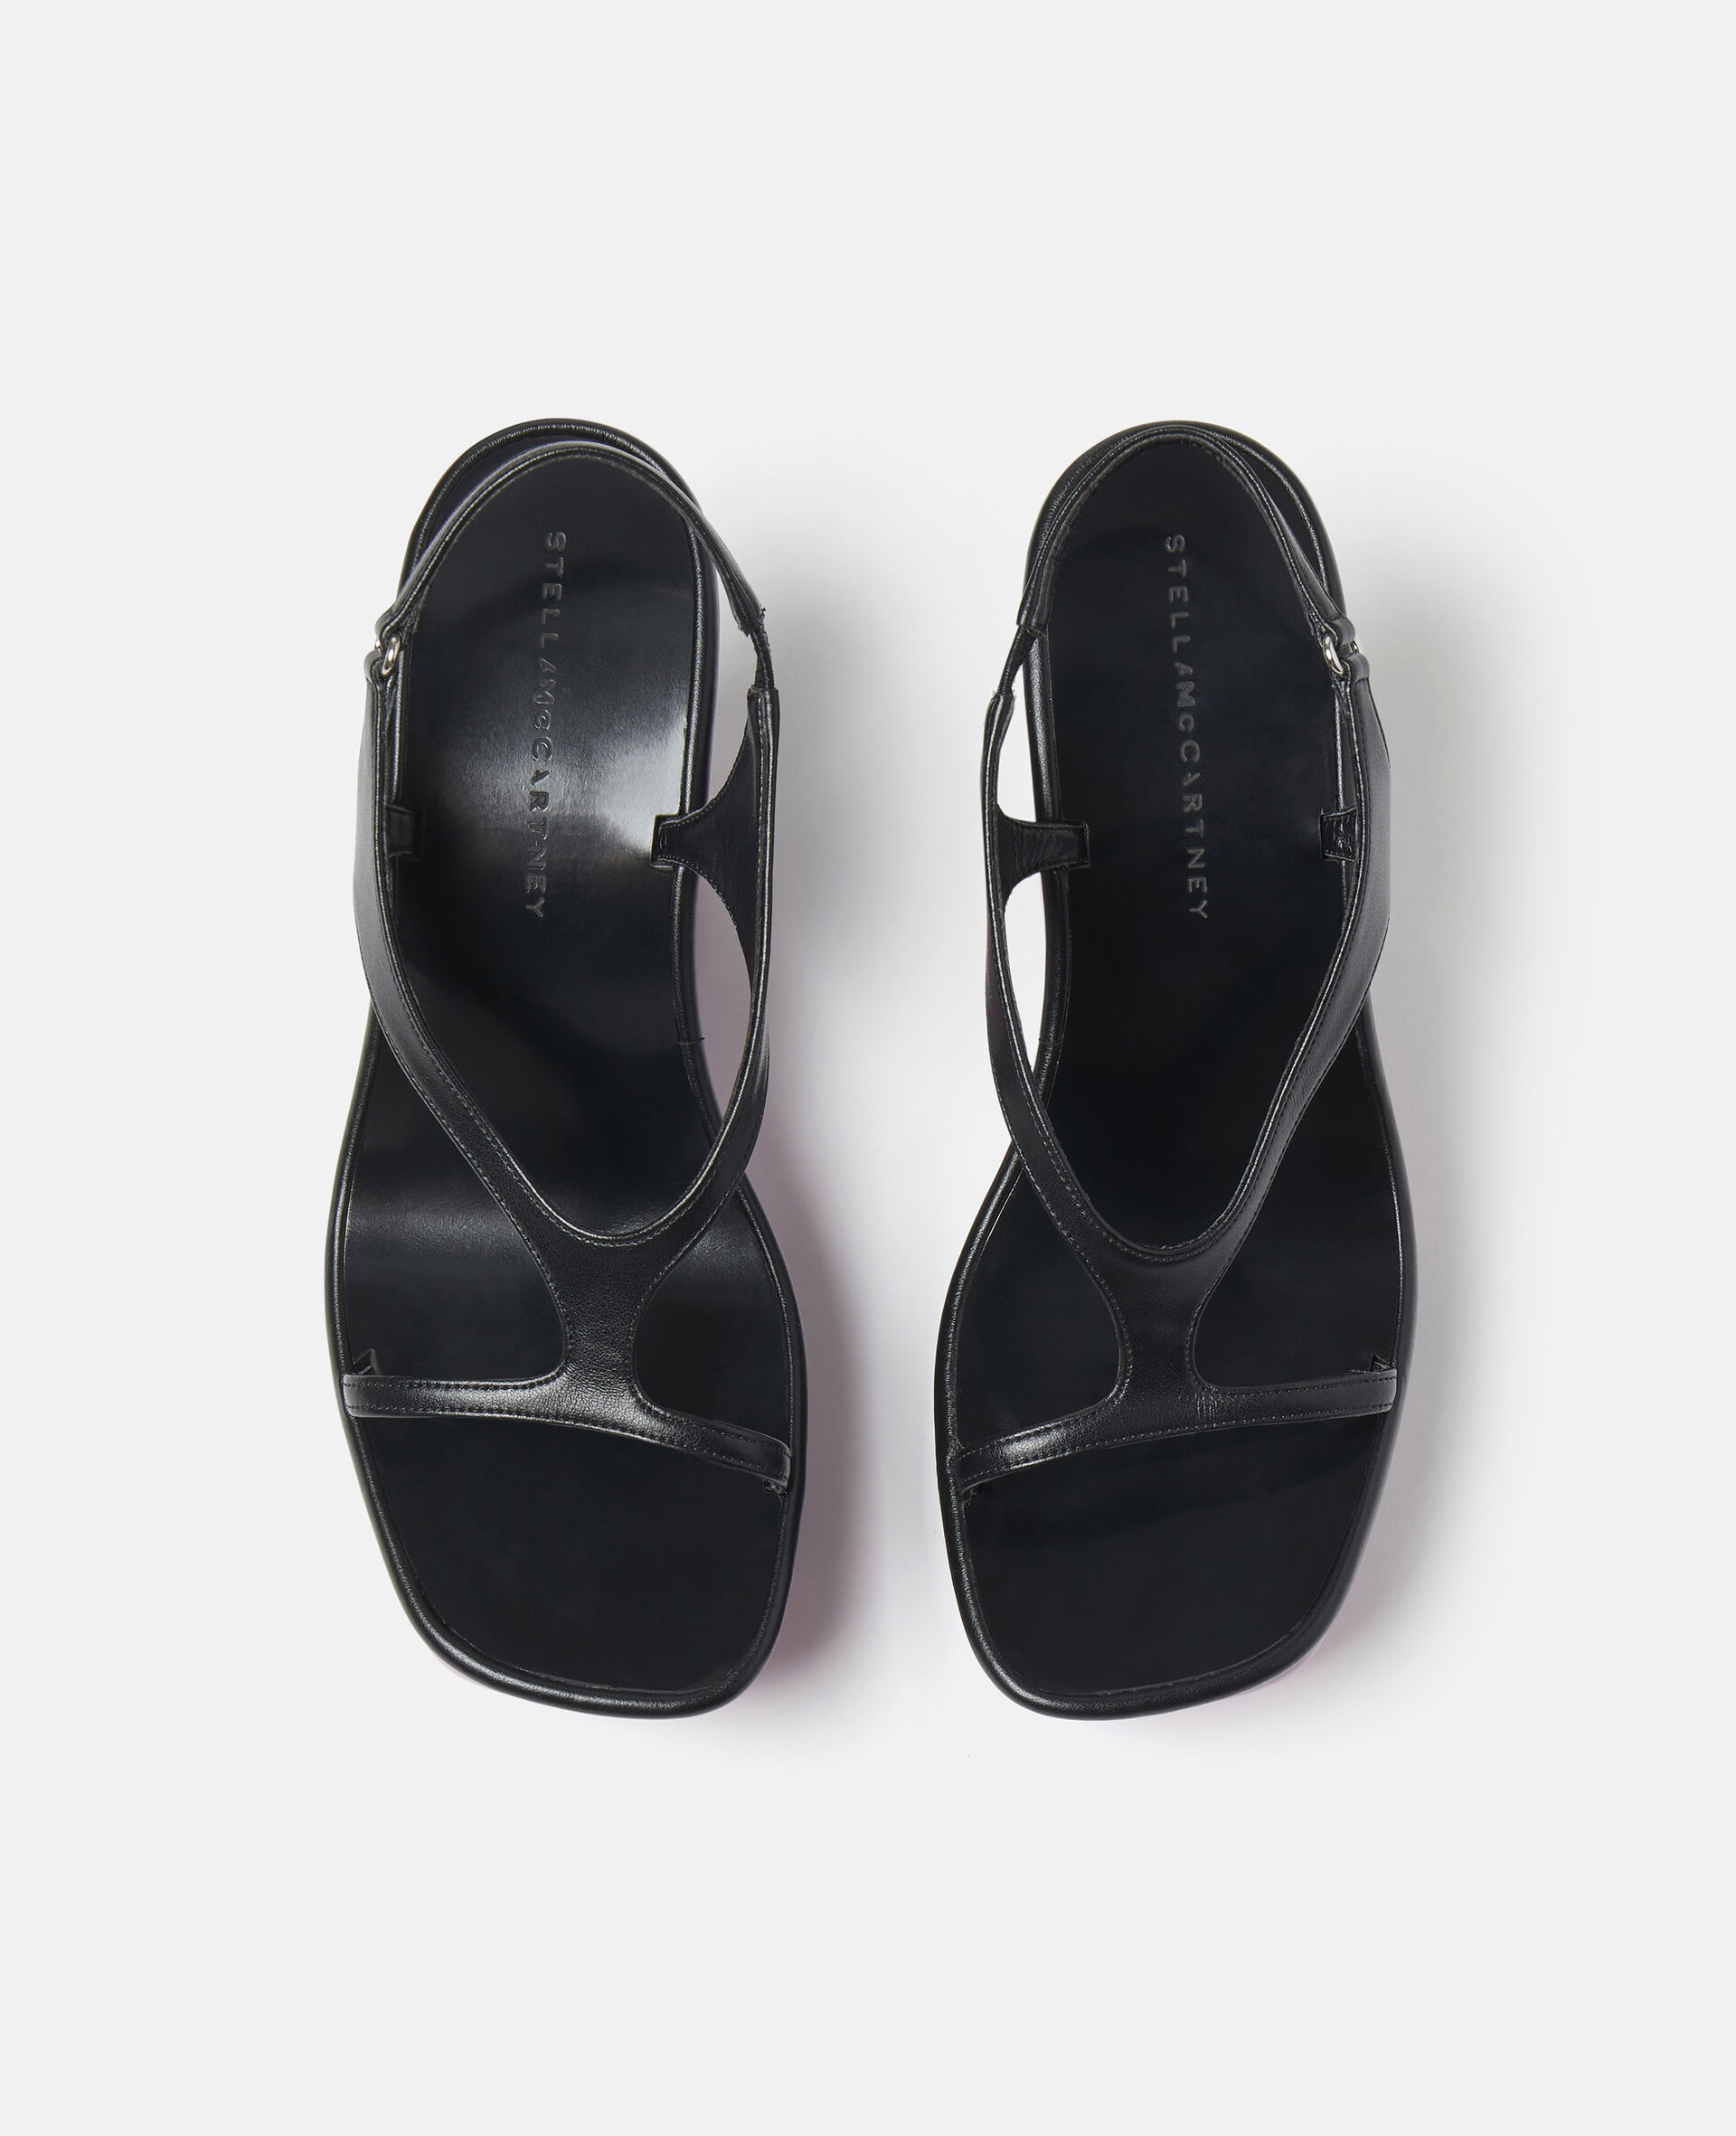 Shroom Slingback Wedge Sandals-Black-large image number 3